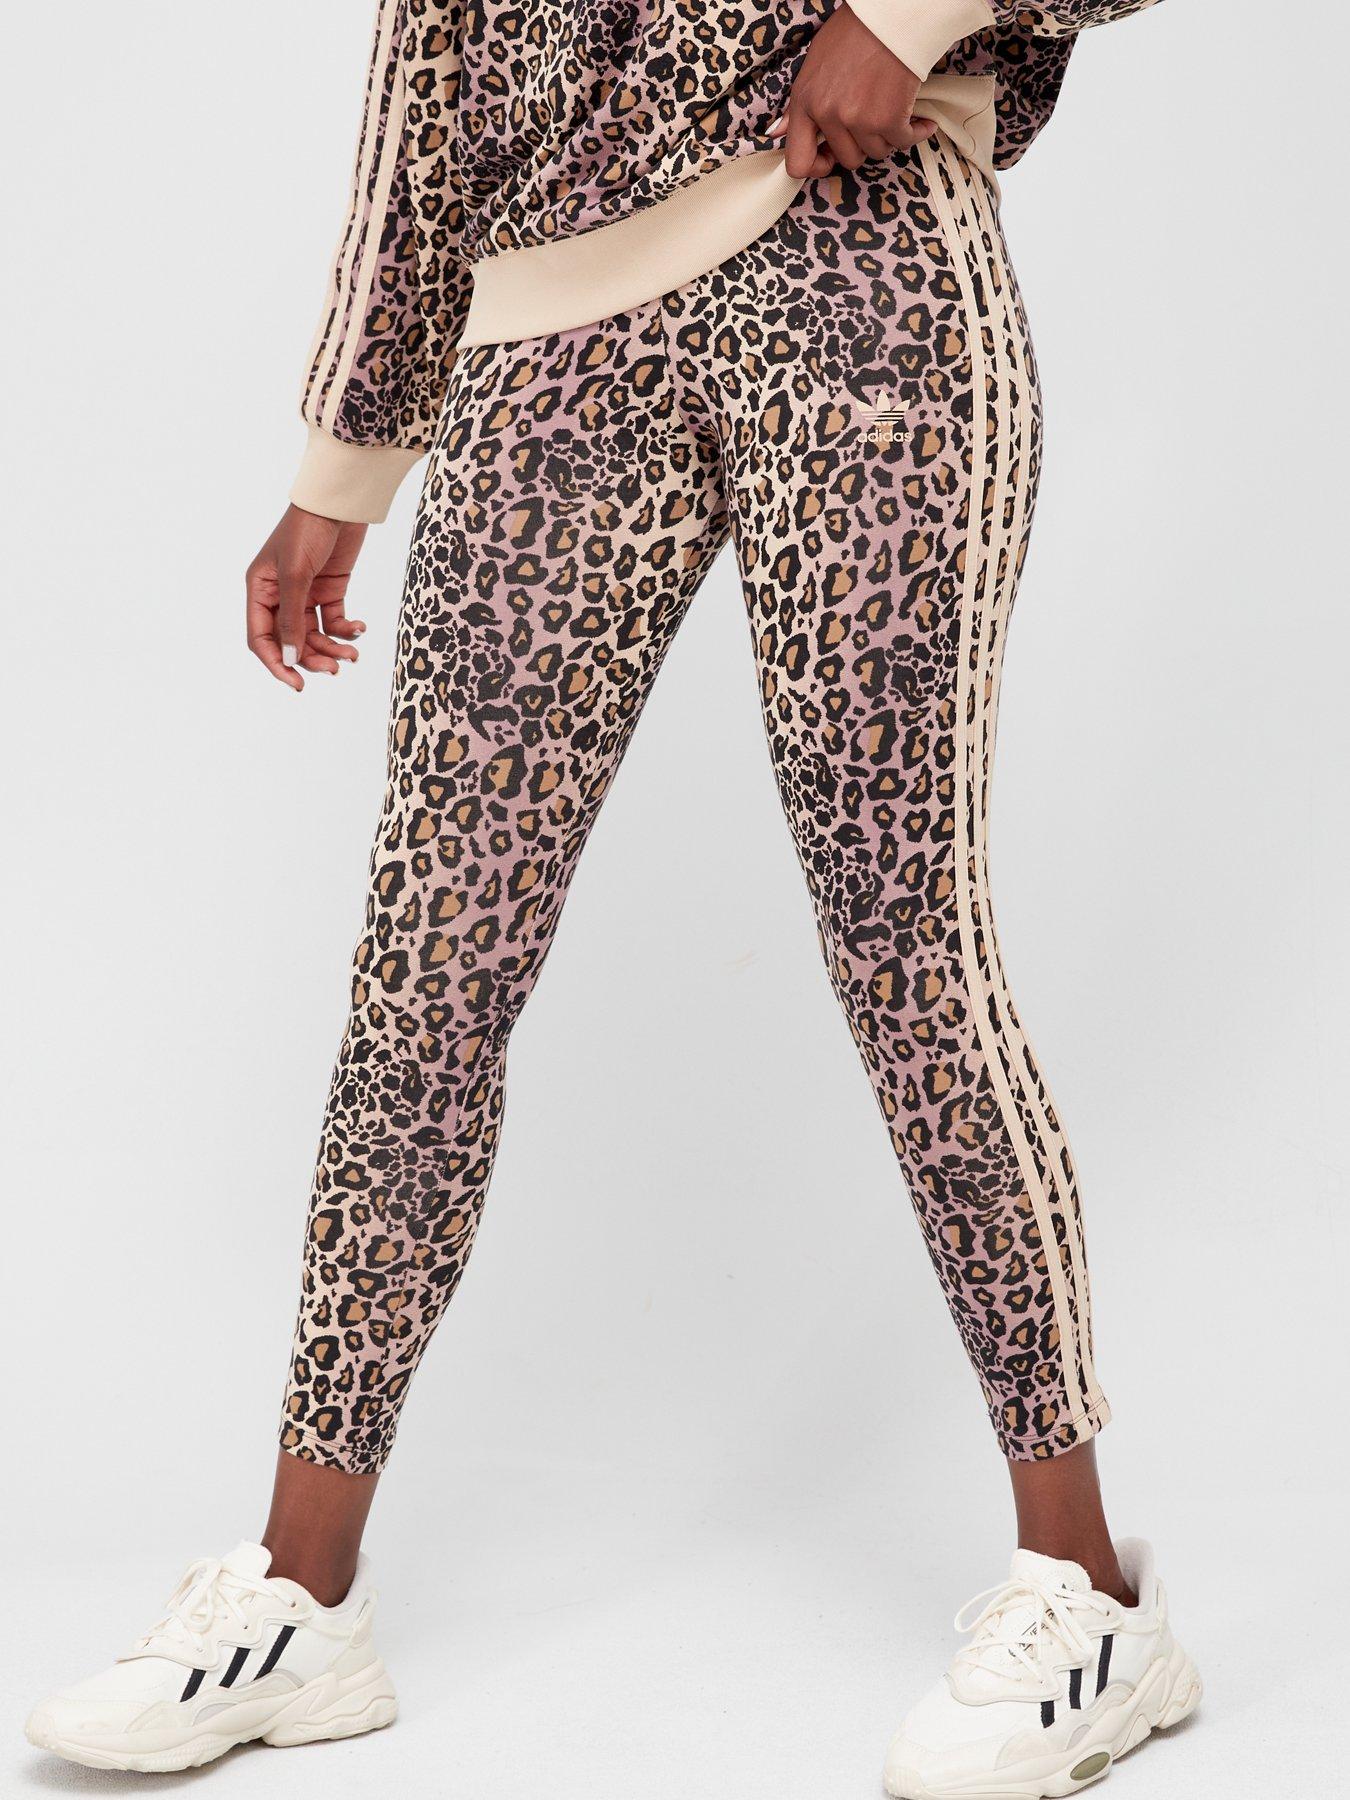 Buy Adidas Leopard Printed 7/8 Leggings In Multiple Colors